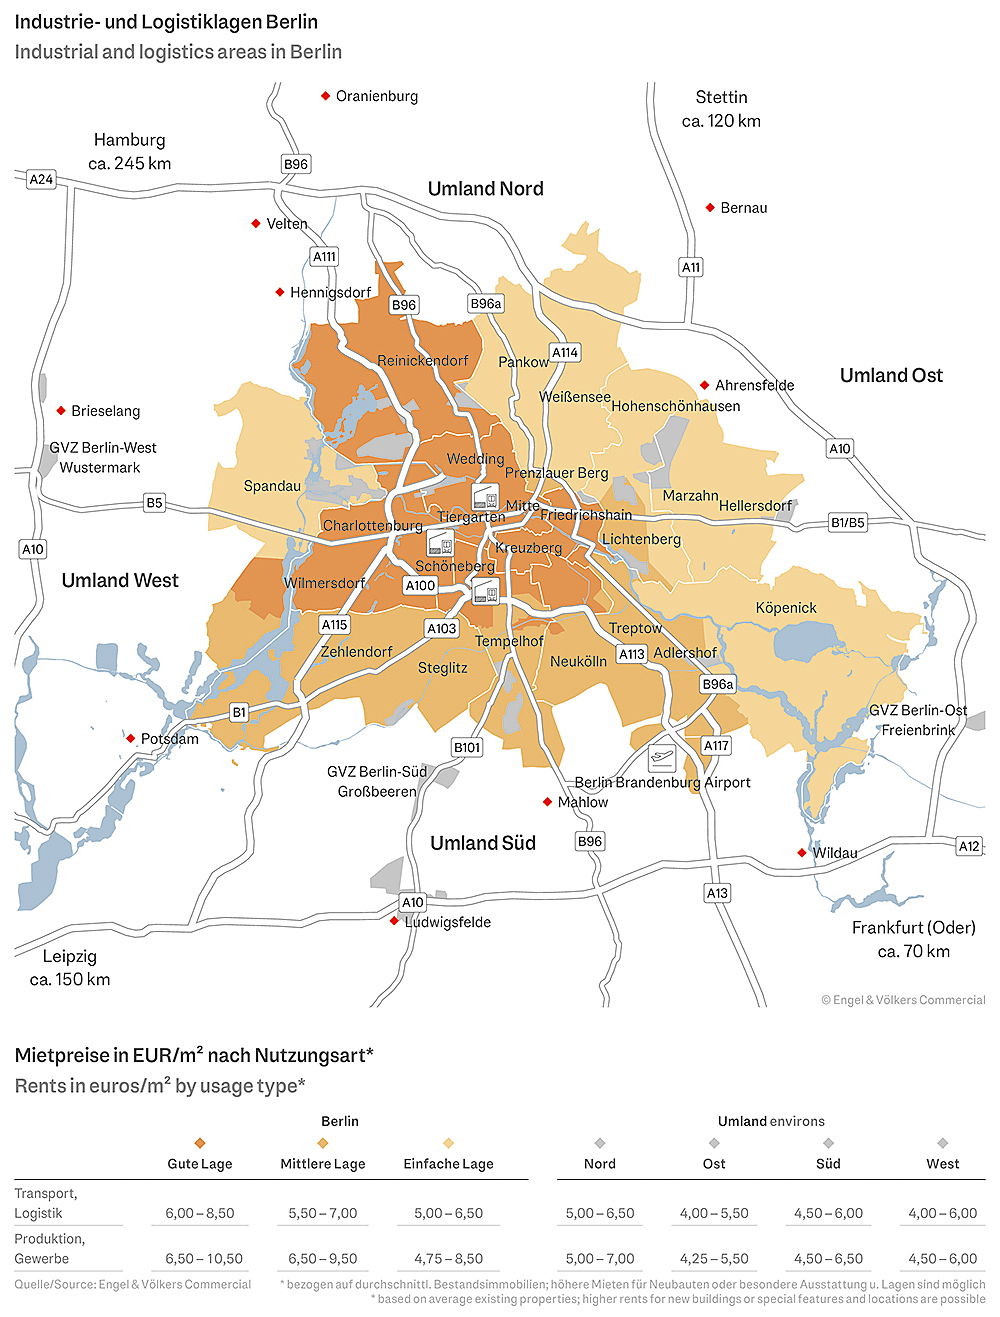  Berlin
- Marktreport Industrie- & Logistikflächen Berlin 2024 – Lagekarte